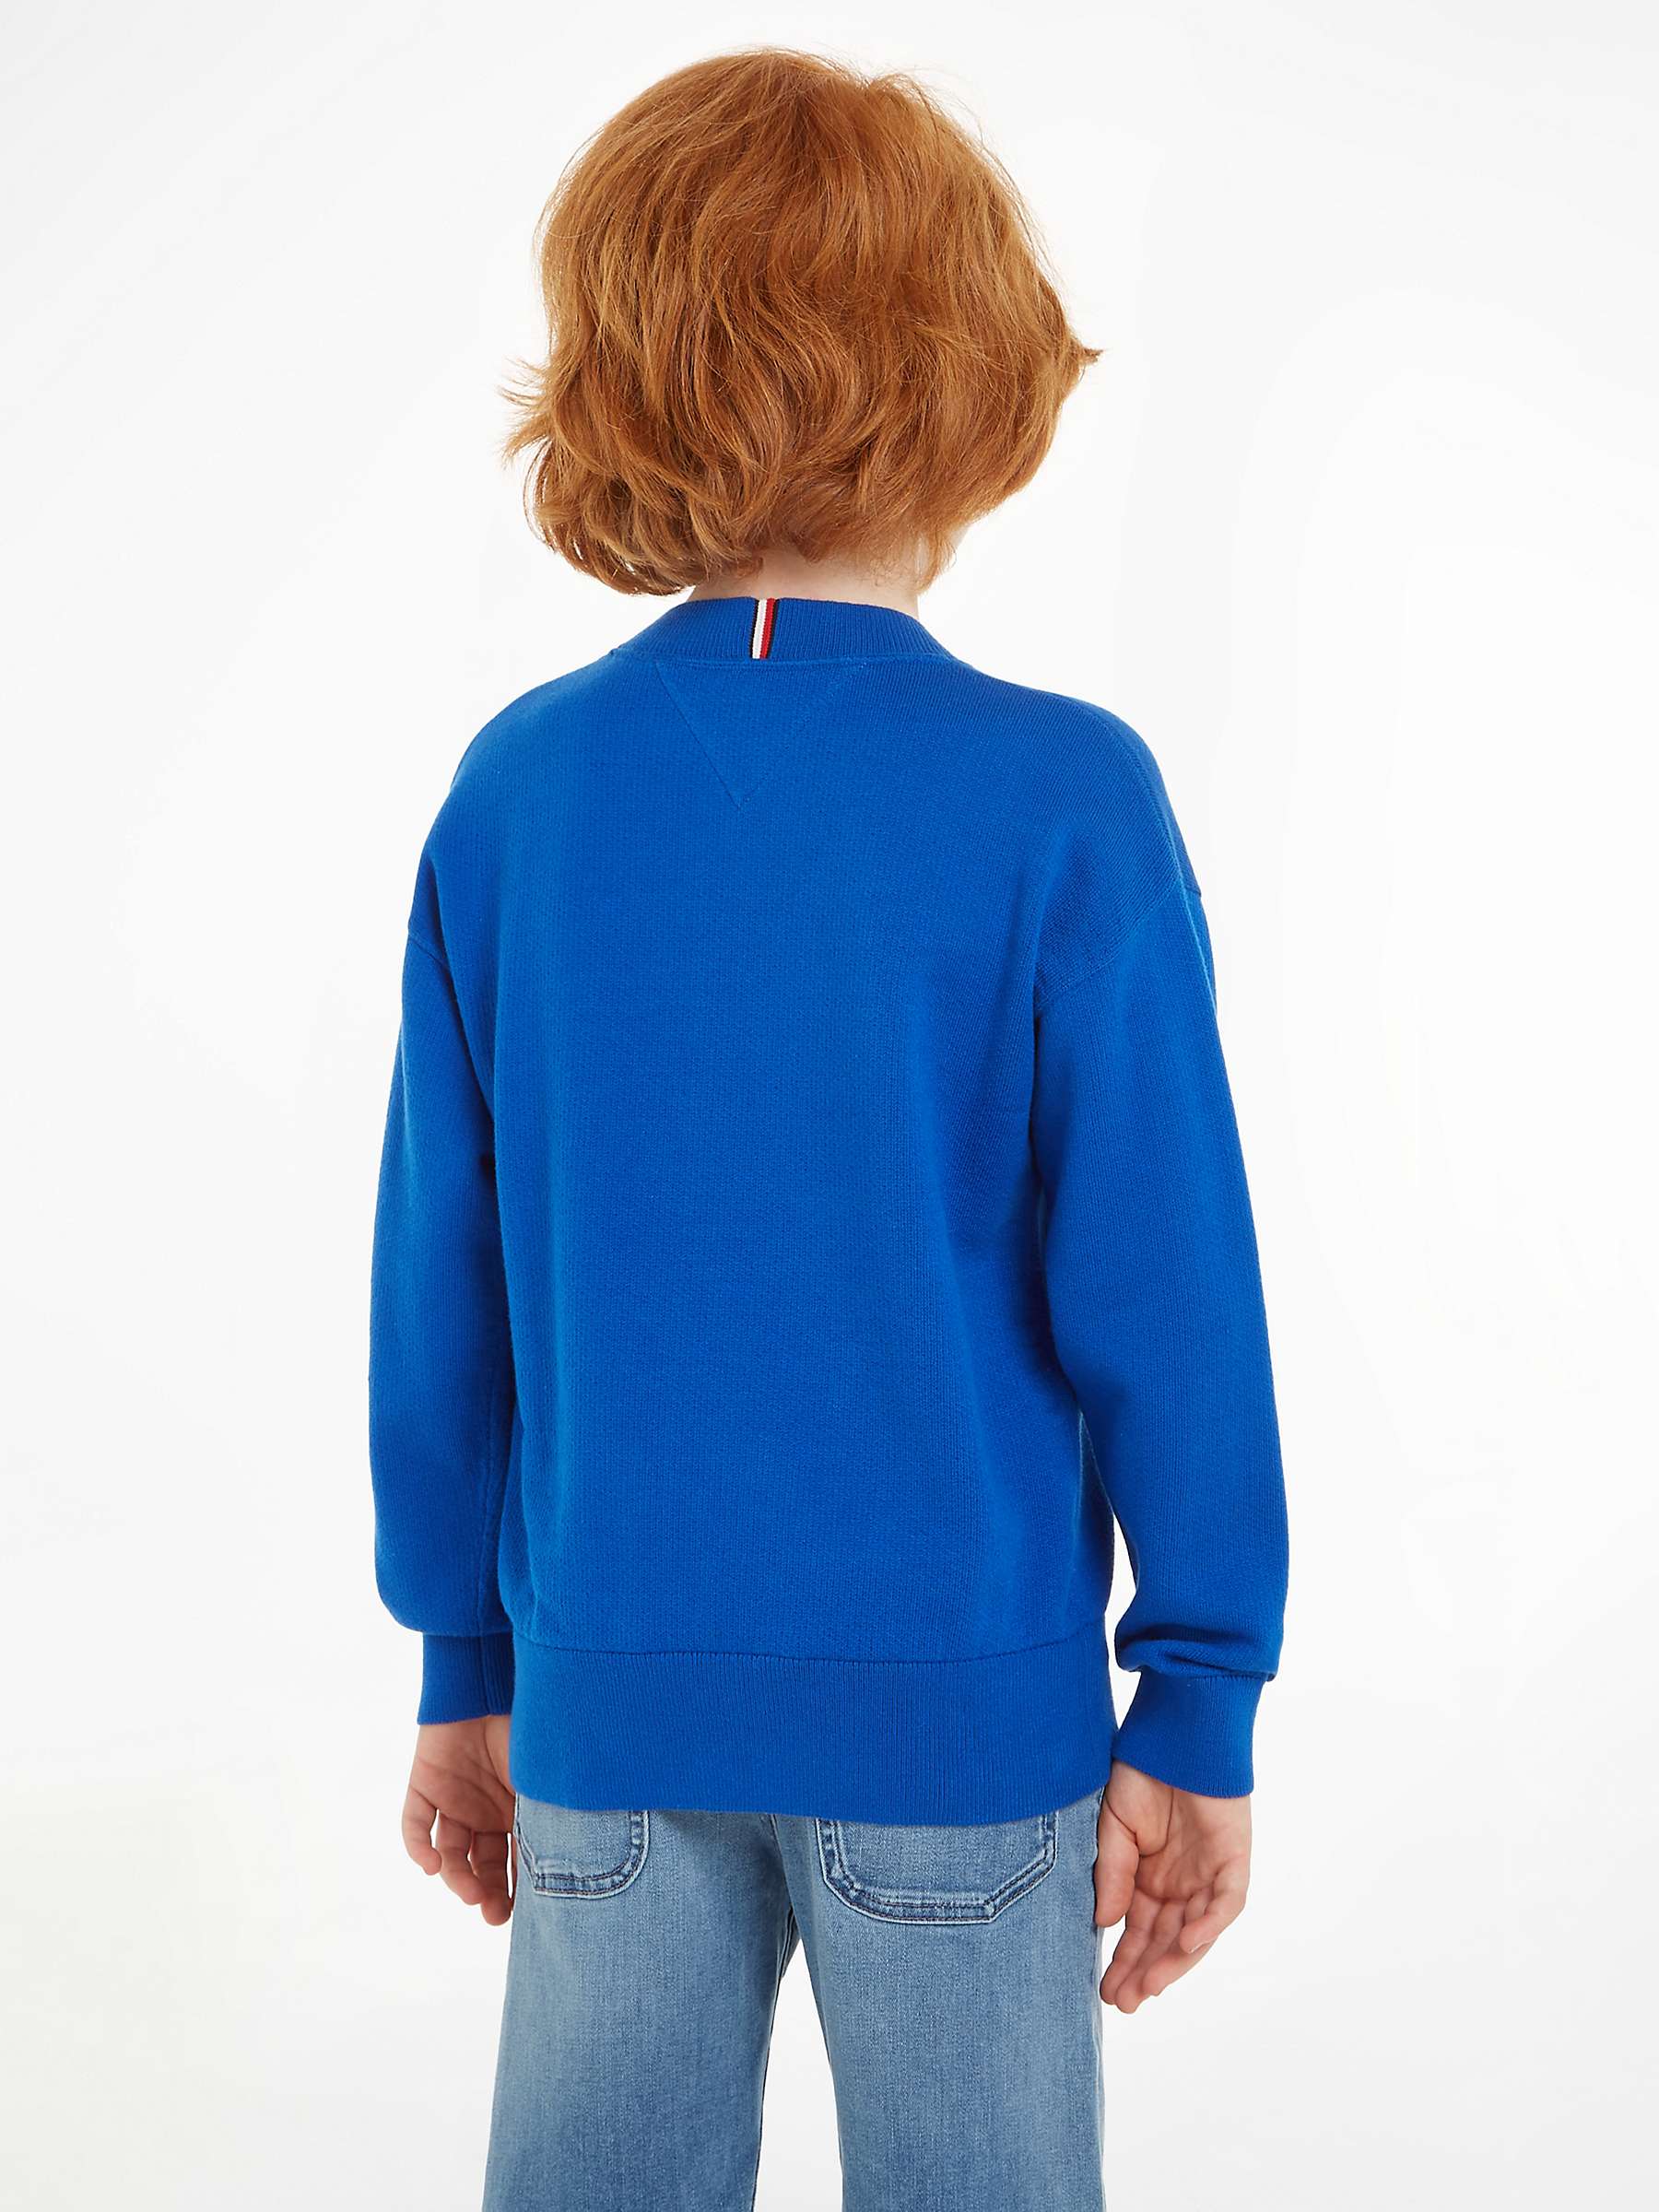 Buy Tommy Hilfiger Kids' Varsity Organic Cotton Jumper, Ultra Blue Online at johnlewis.com